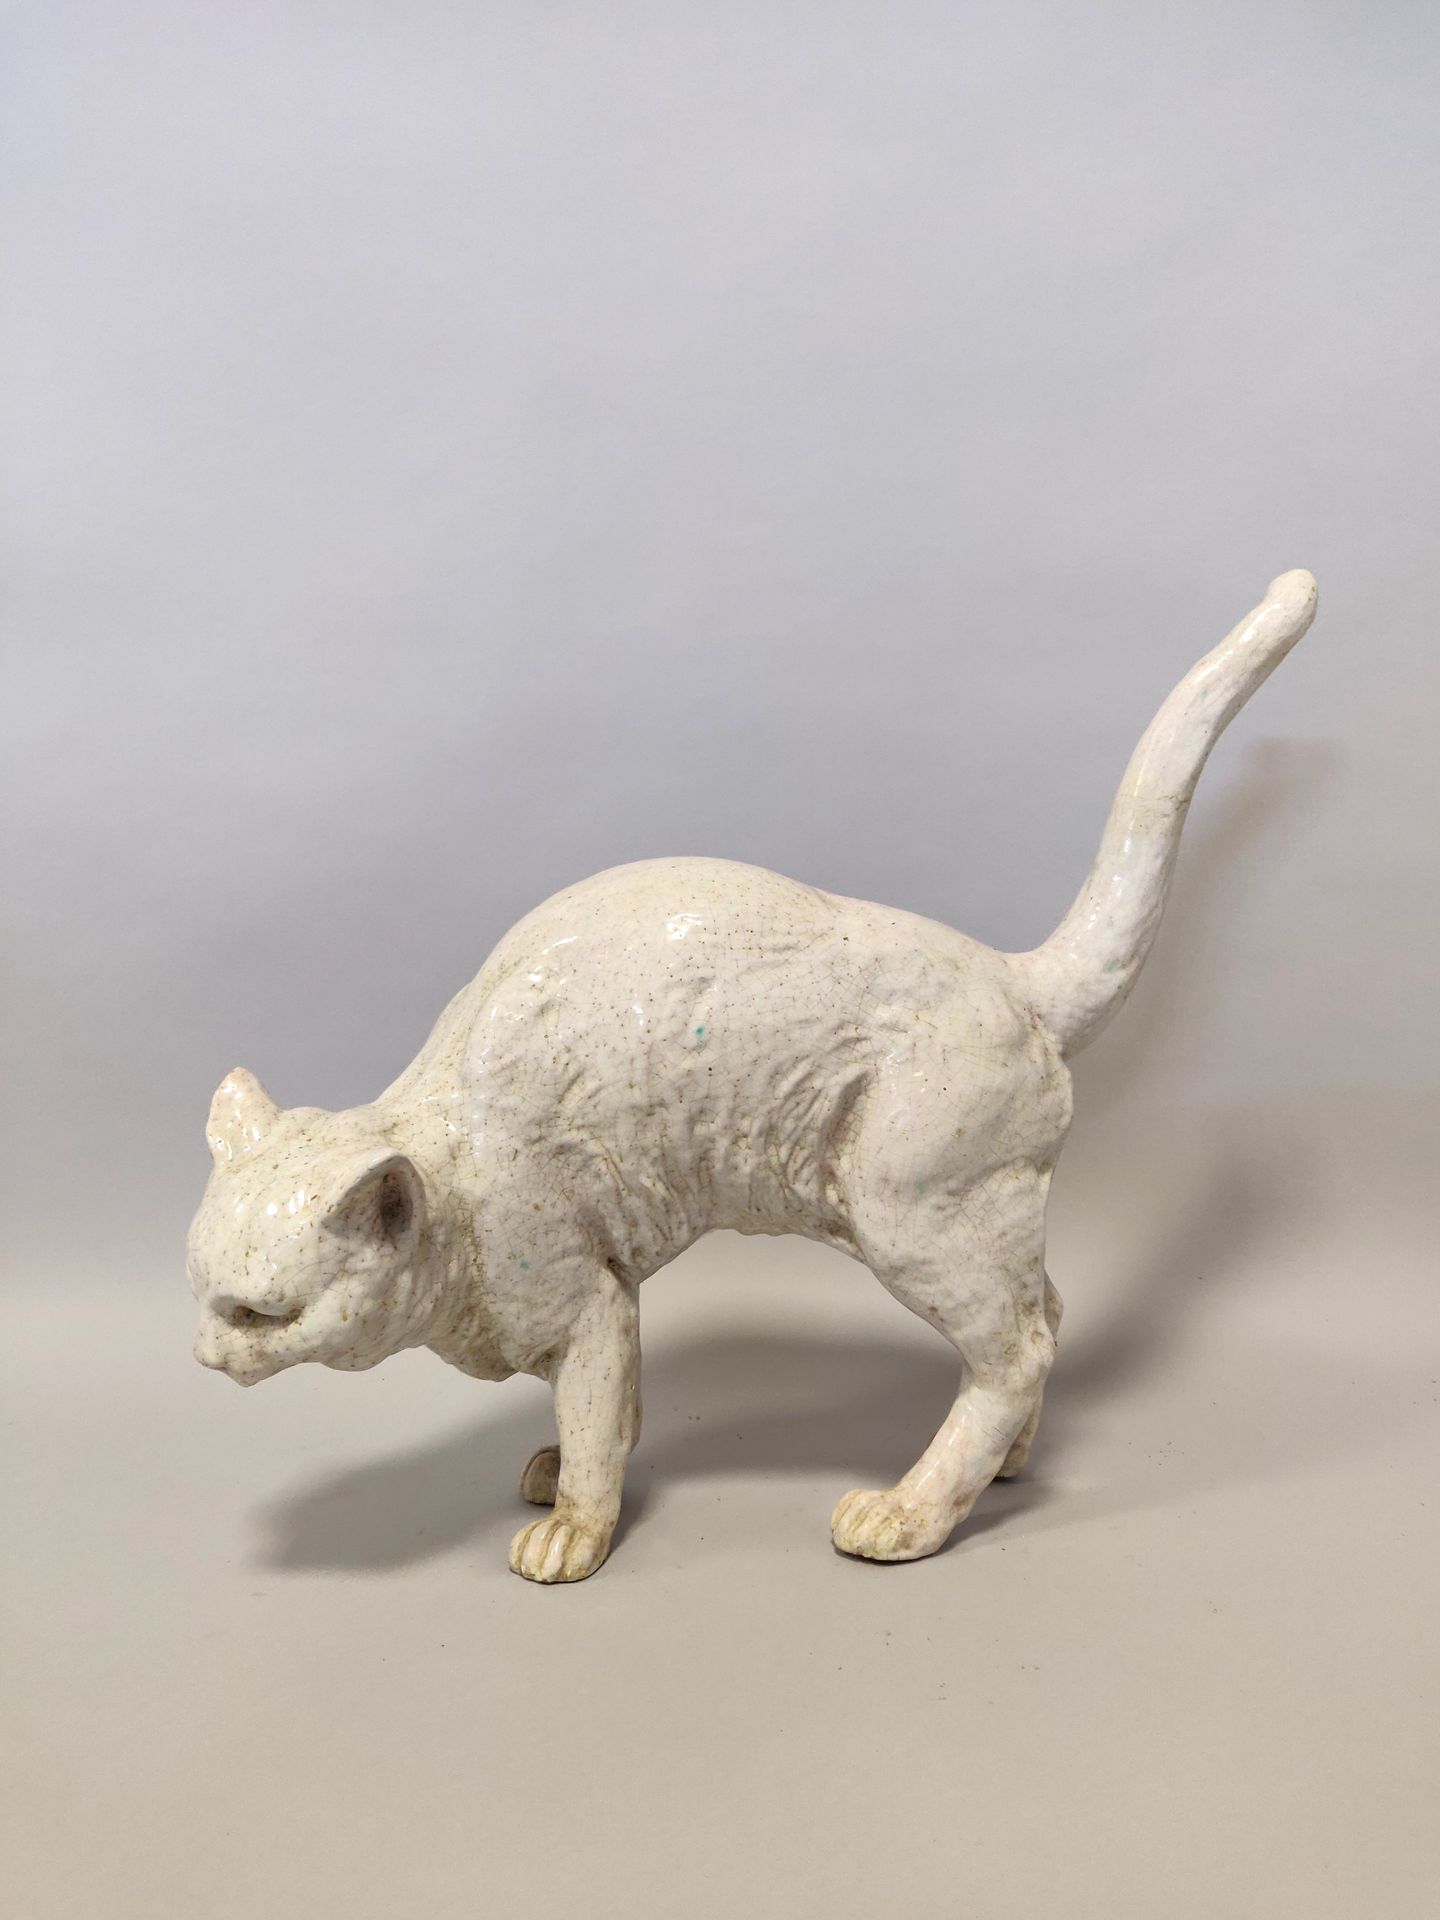 Null BAVENT. Objeto de terracota vidriada blanca que representa un gato con la e&hellip;